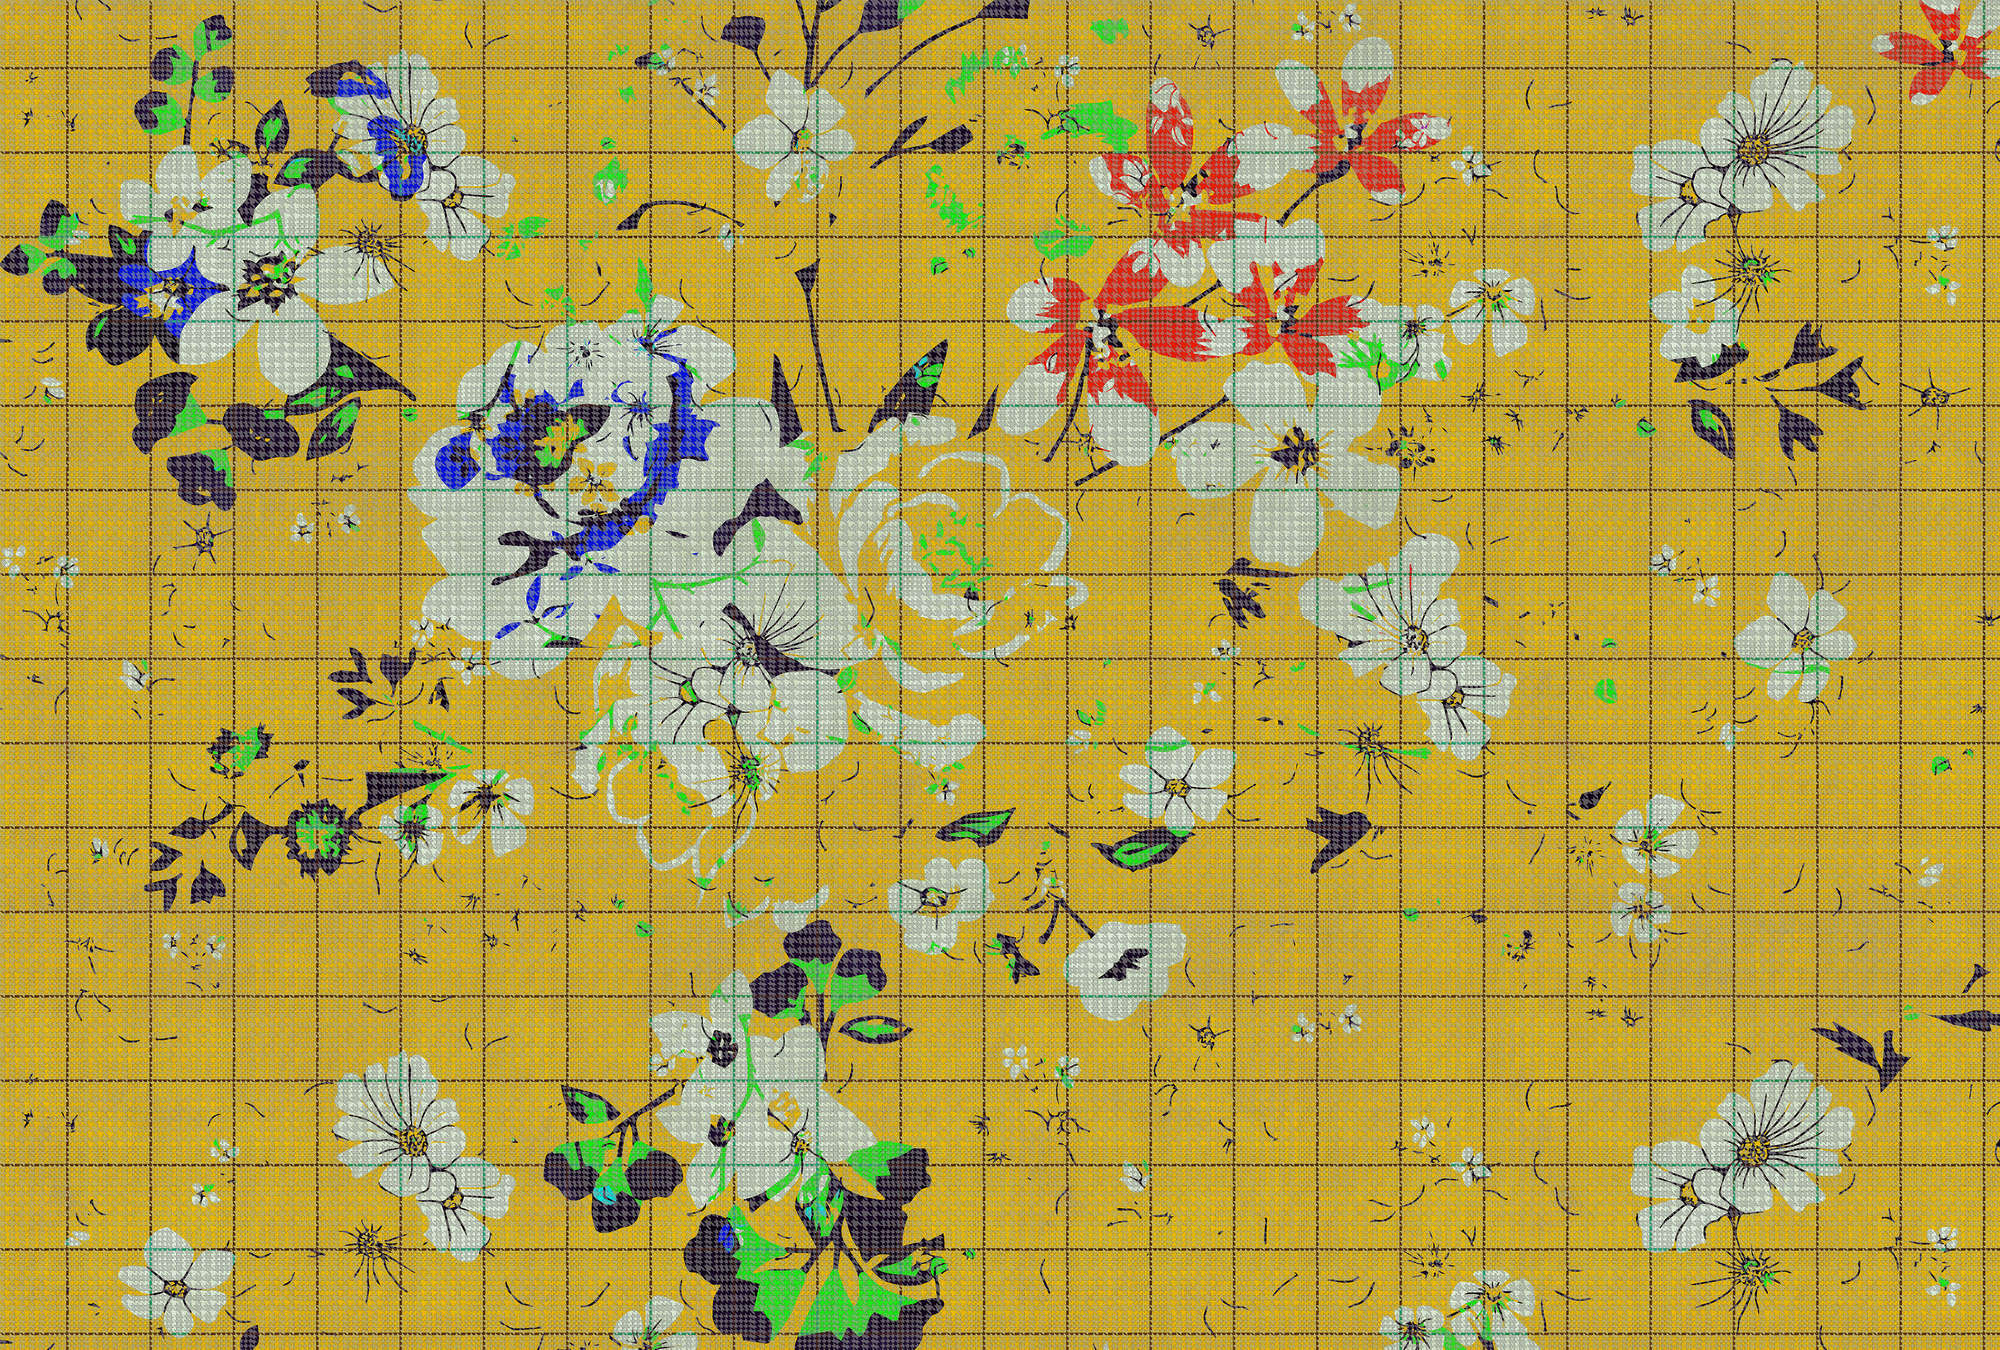             Fiore a quadri 1 - Fotomurali a mosaico di fiori colorati con aspetto a scacchiera - Vello liscio blu, giallo | perla
        